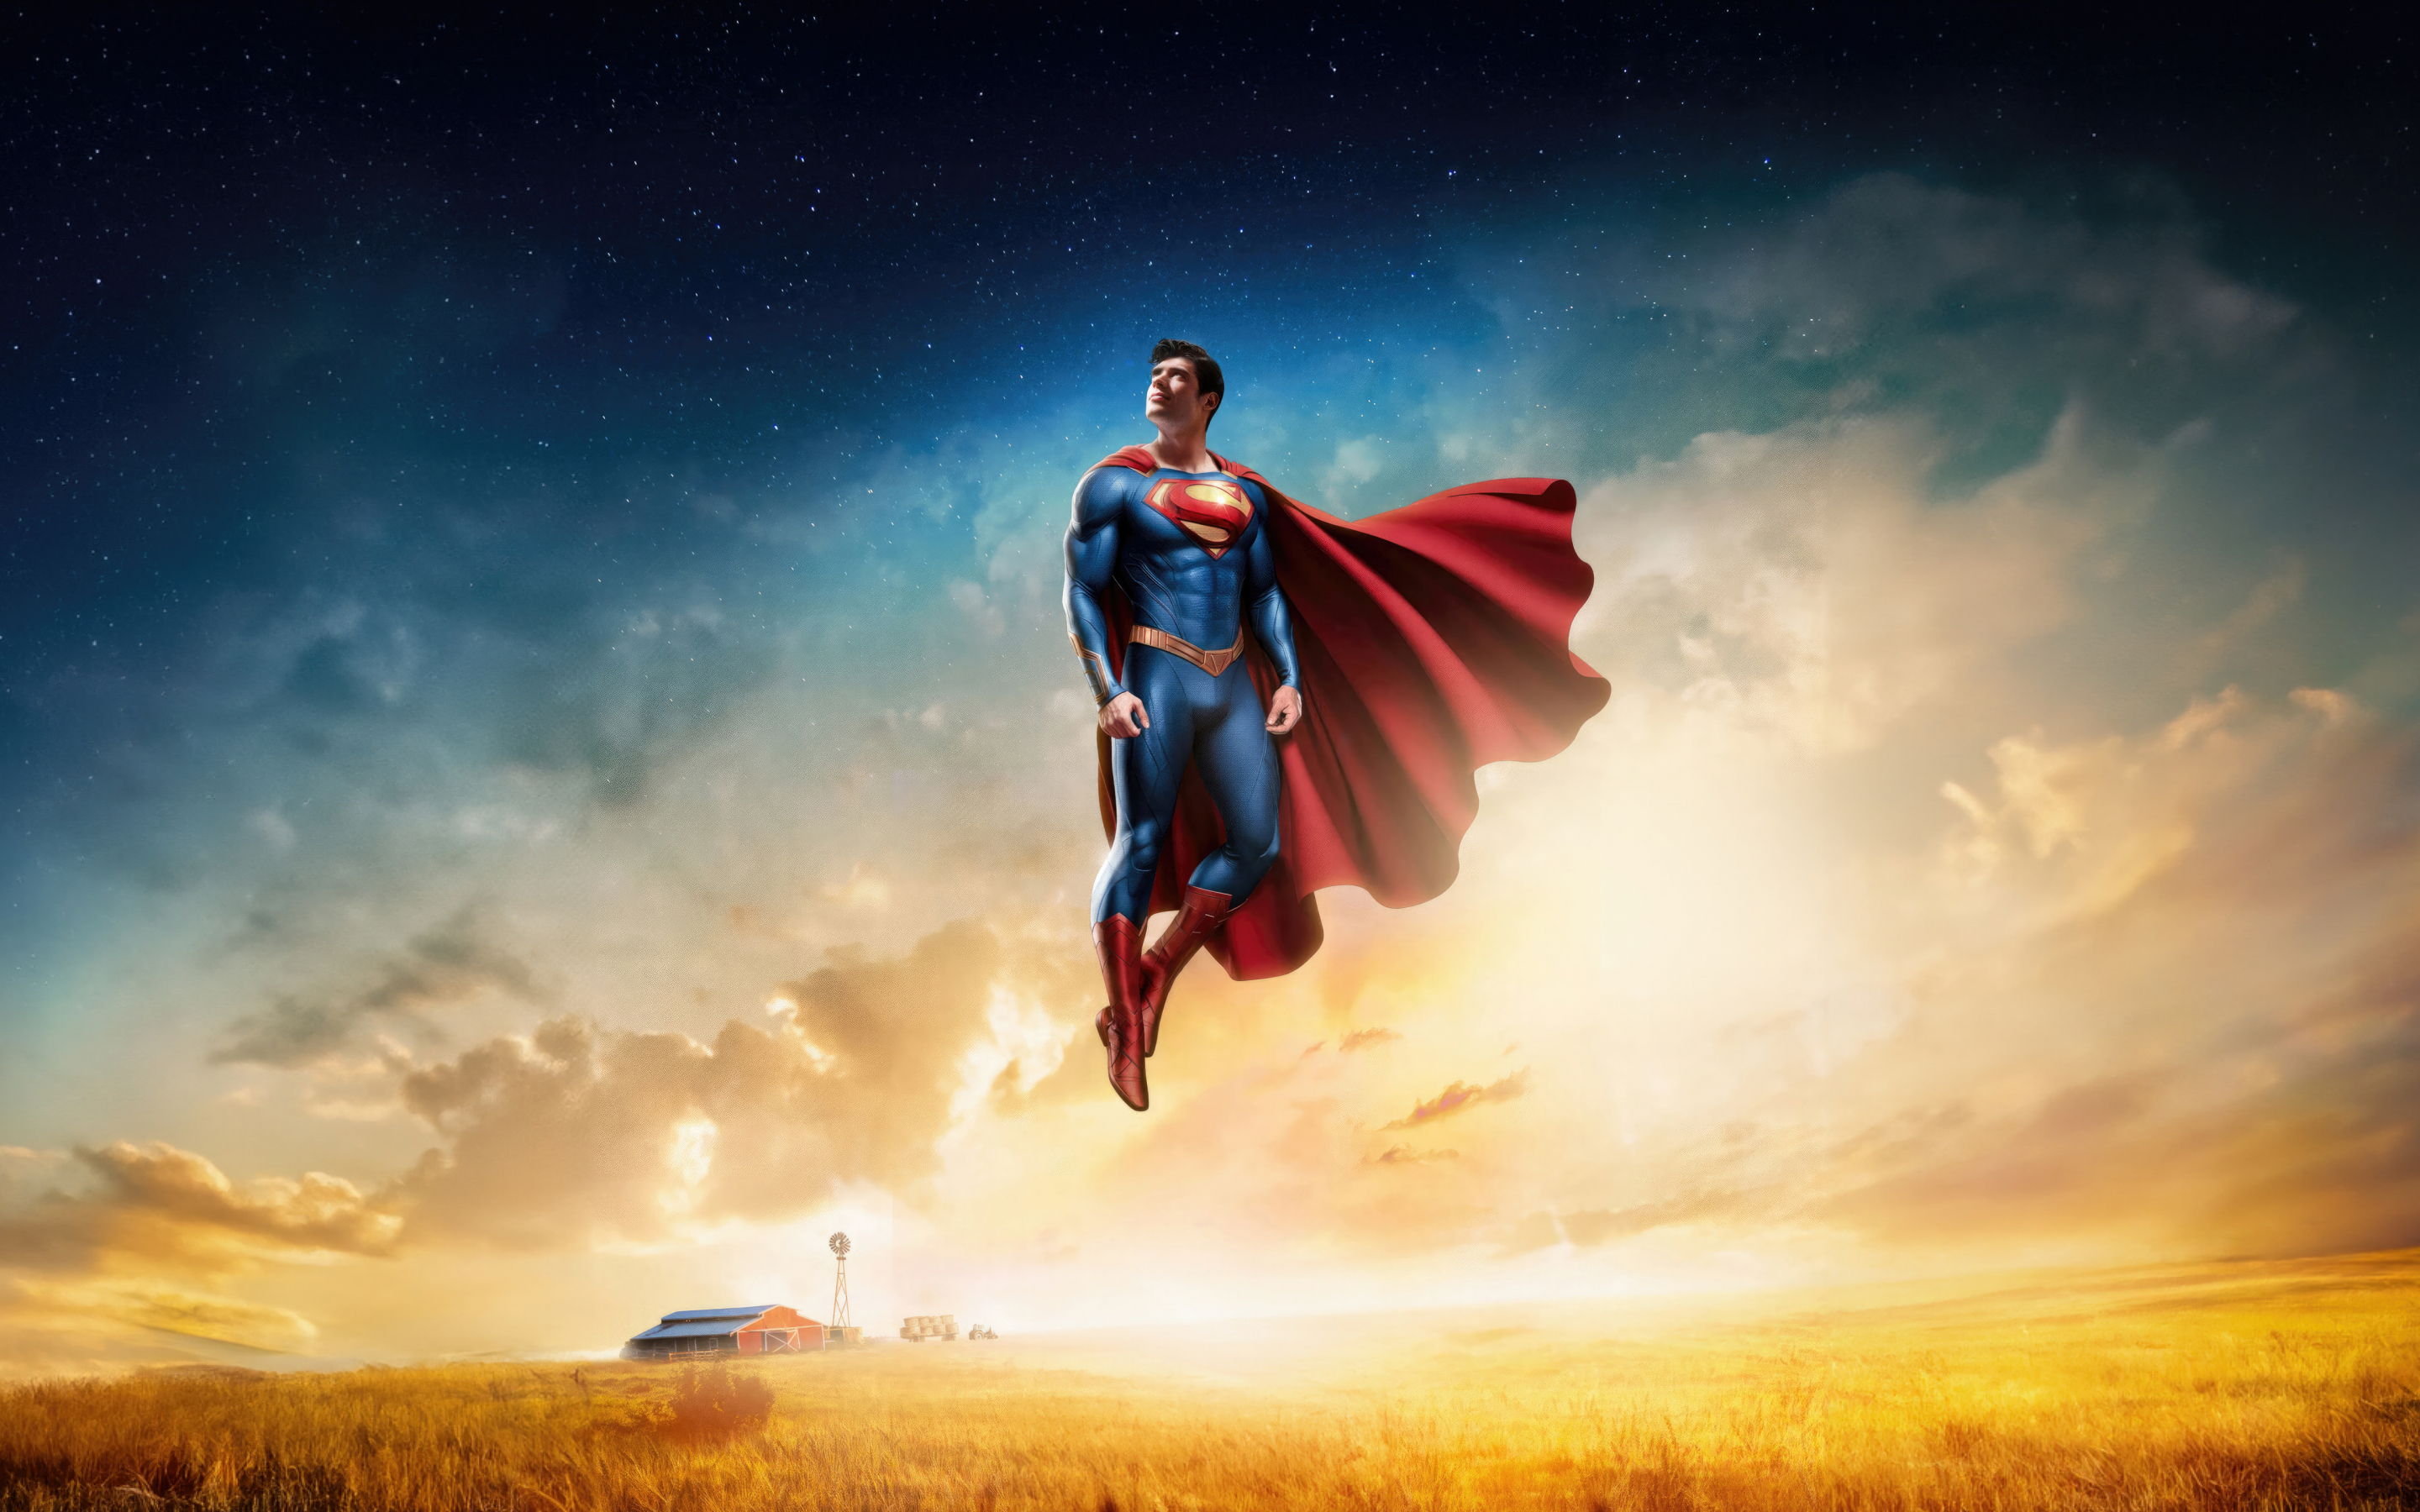 Superman's legacy, flight over the farm, fan art, 2880x1800 wallpaper